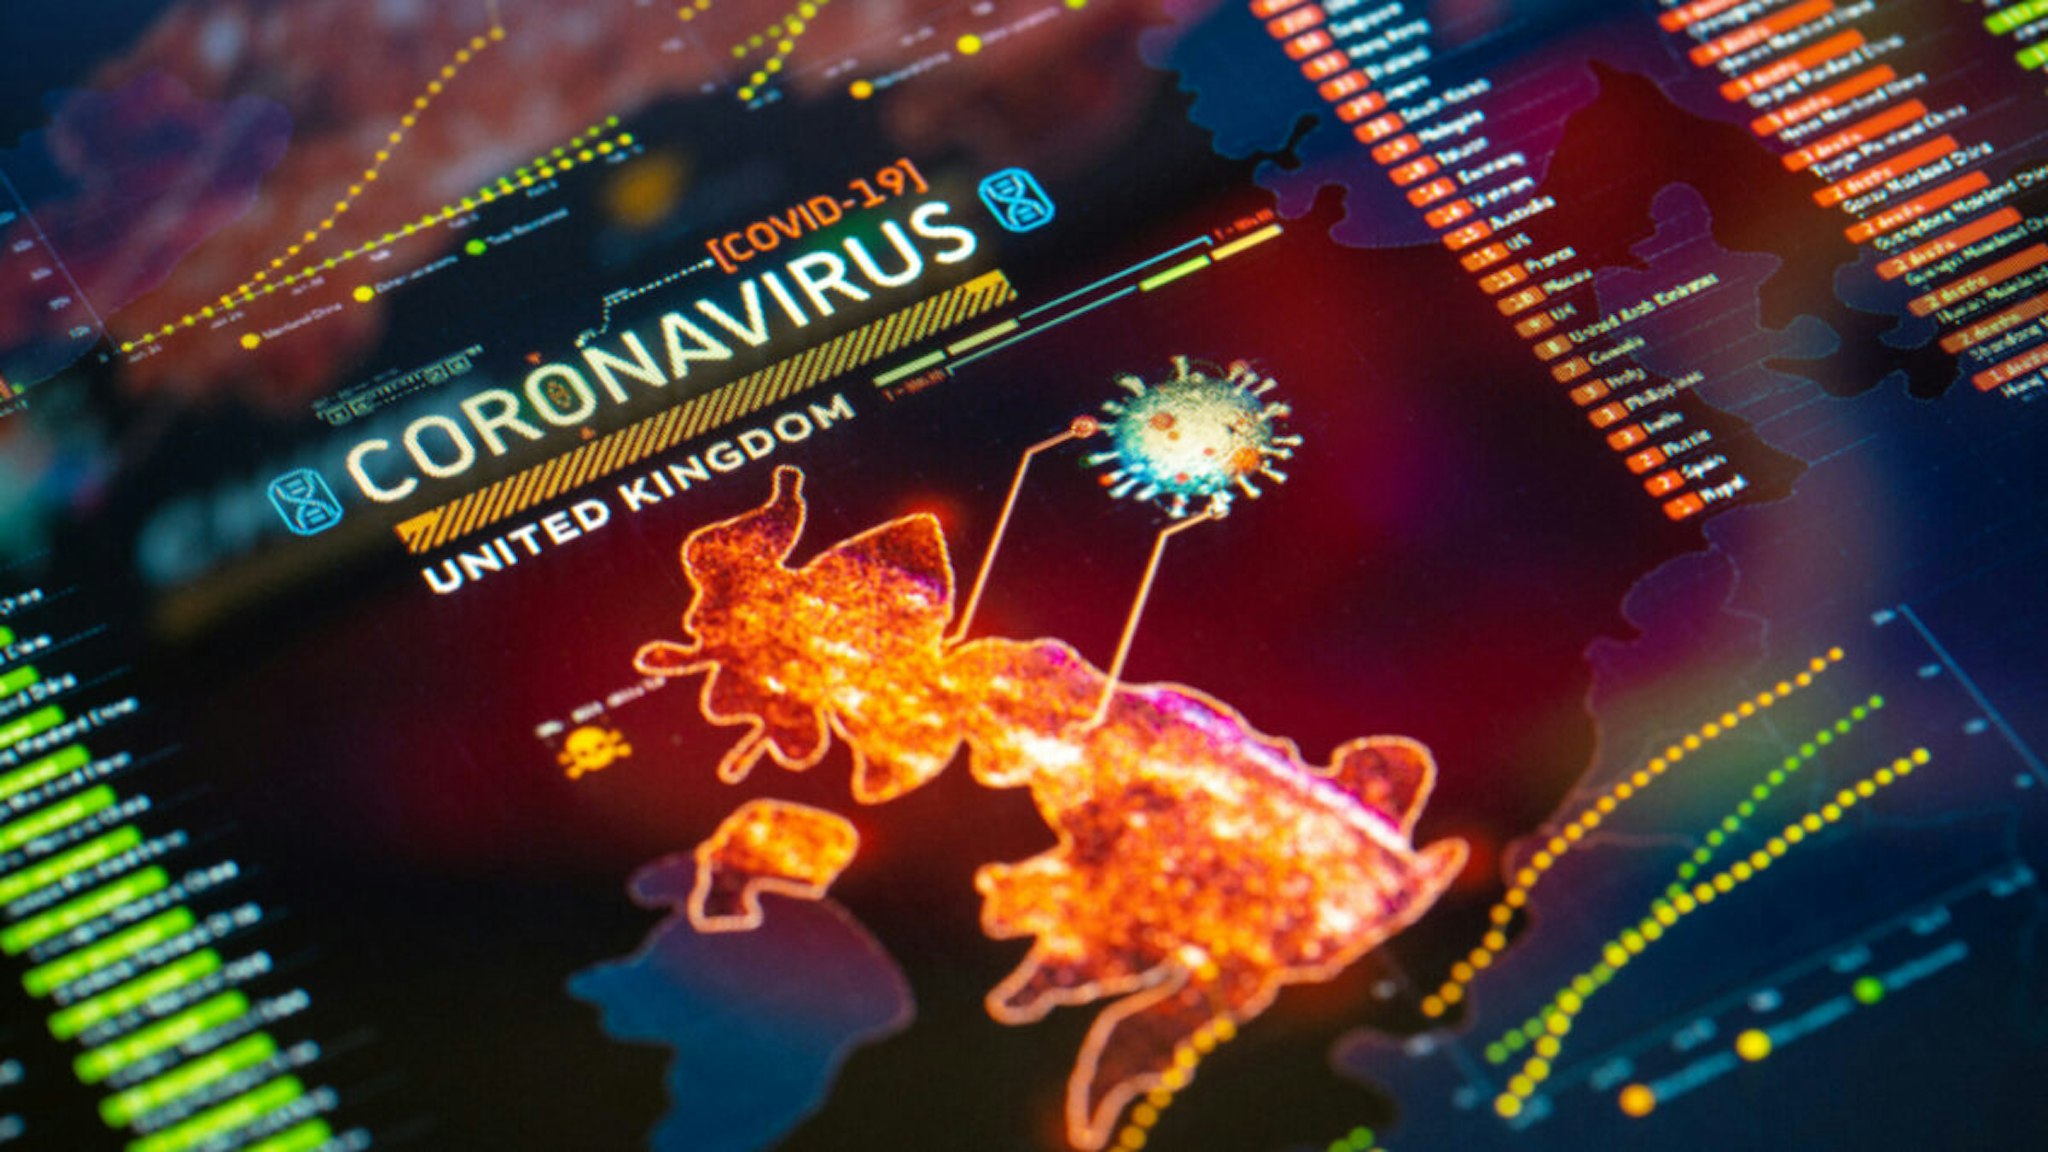 Coronavirus (COVID-19) Outbreak in United Kingdom Statistics close-up on digital display.